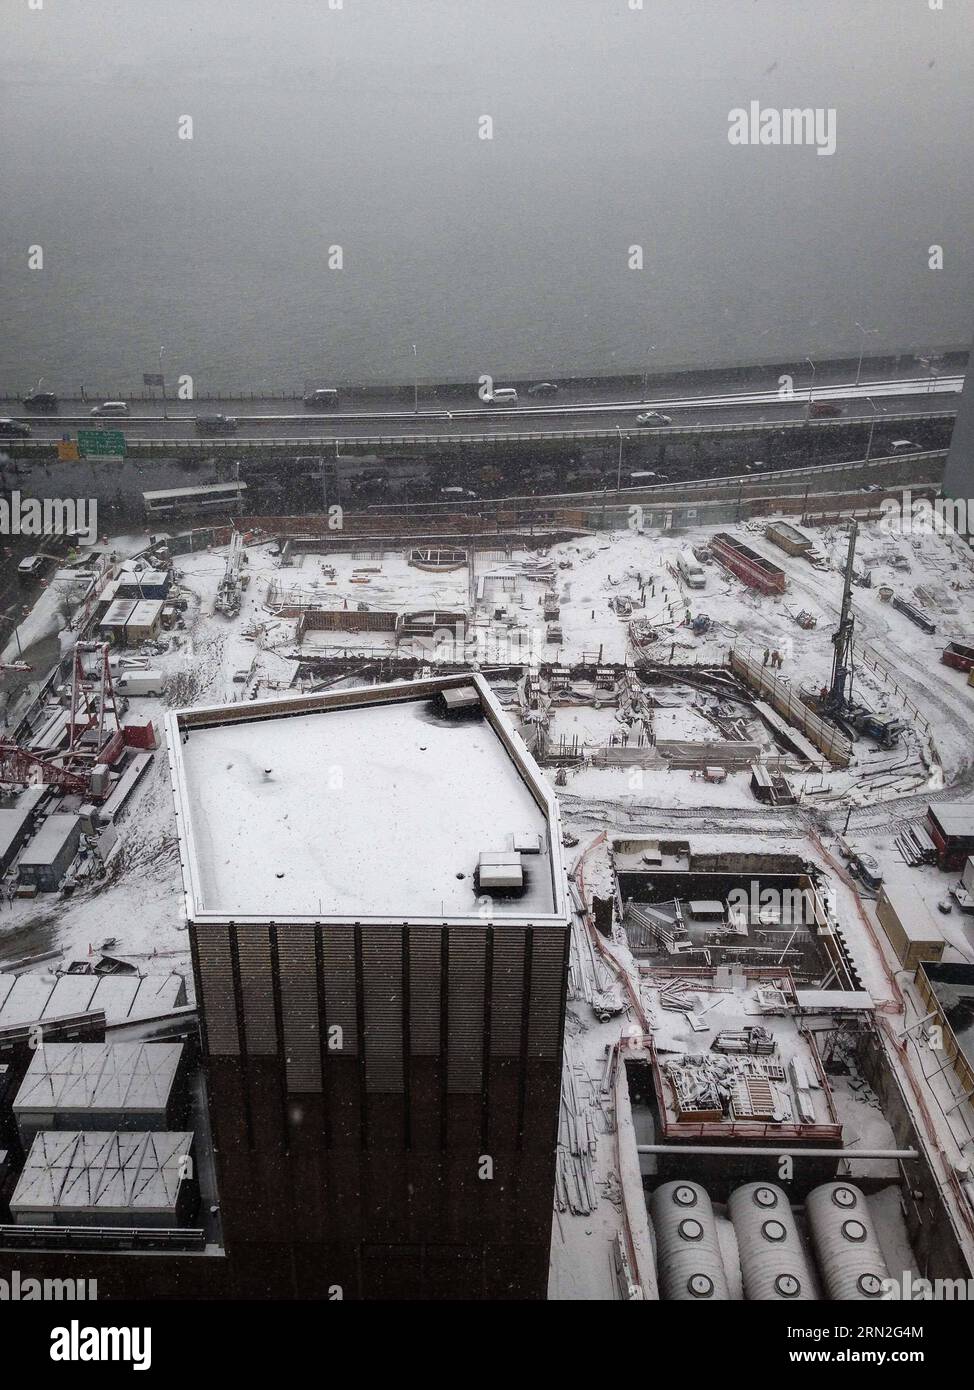 (150305) -- NEW YORK, 5 mars 2015 -- une photo prise avec un téléphone portable montre des véhicules passant devant un chantier de construction lors d'une forte chute de neige à Manhattan, New York, États-Unis, le 5 mars 2015. Une tempête hivernale puissante se déplaçant à travers l'est des États-Unis apporte de la neige abondante de parties de la vallée de l'Ohio au nord-est jeudi et met 94 millions de personnes sous avertissement de tempête hivernale ou avis de météo hivernale, US National Weather Service (NWS) a dit.) États-Unis-NEW YORK-MÉTÉO-NEIGE NiuxXiaolei PUBLICATIONxNOTxINxCHN New York Mars 5 2015 photo prise par téléphone portable montre DES VÉHICULES conduisant pas Banque D'Images